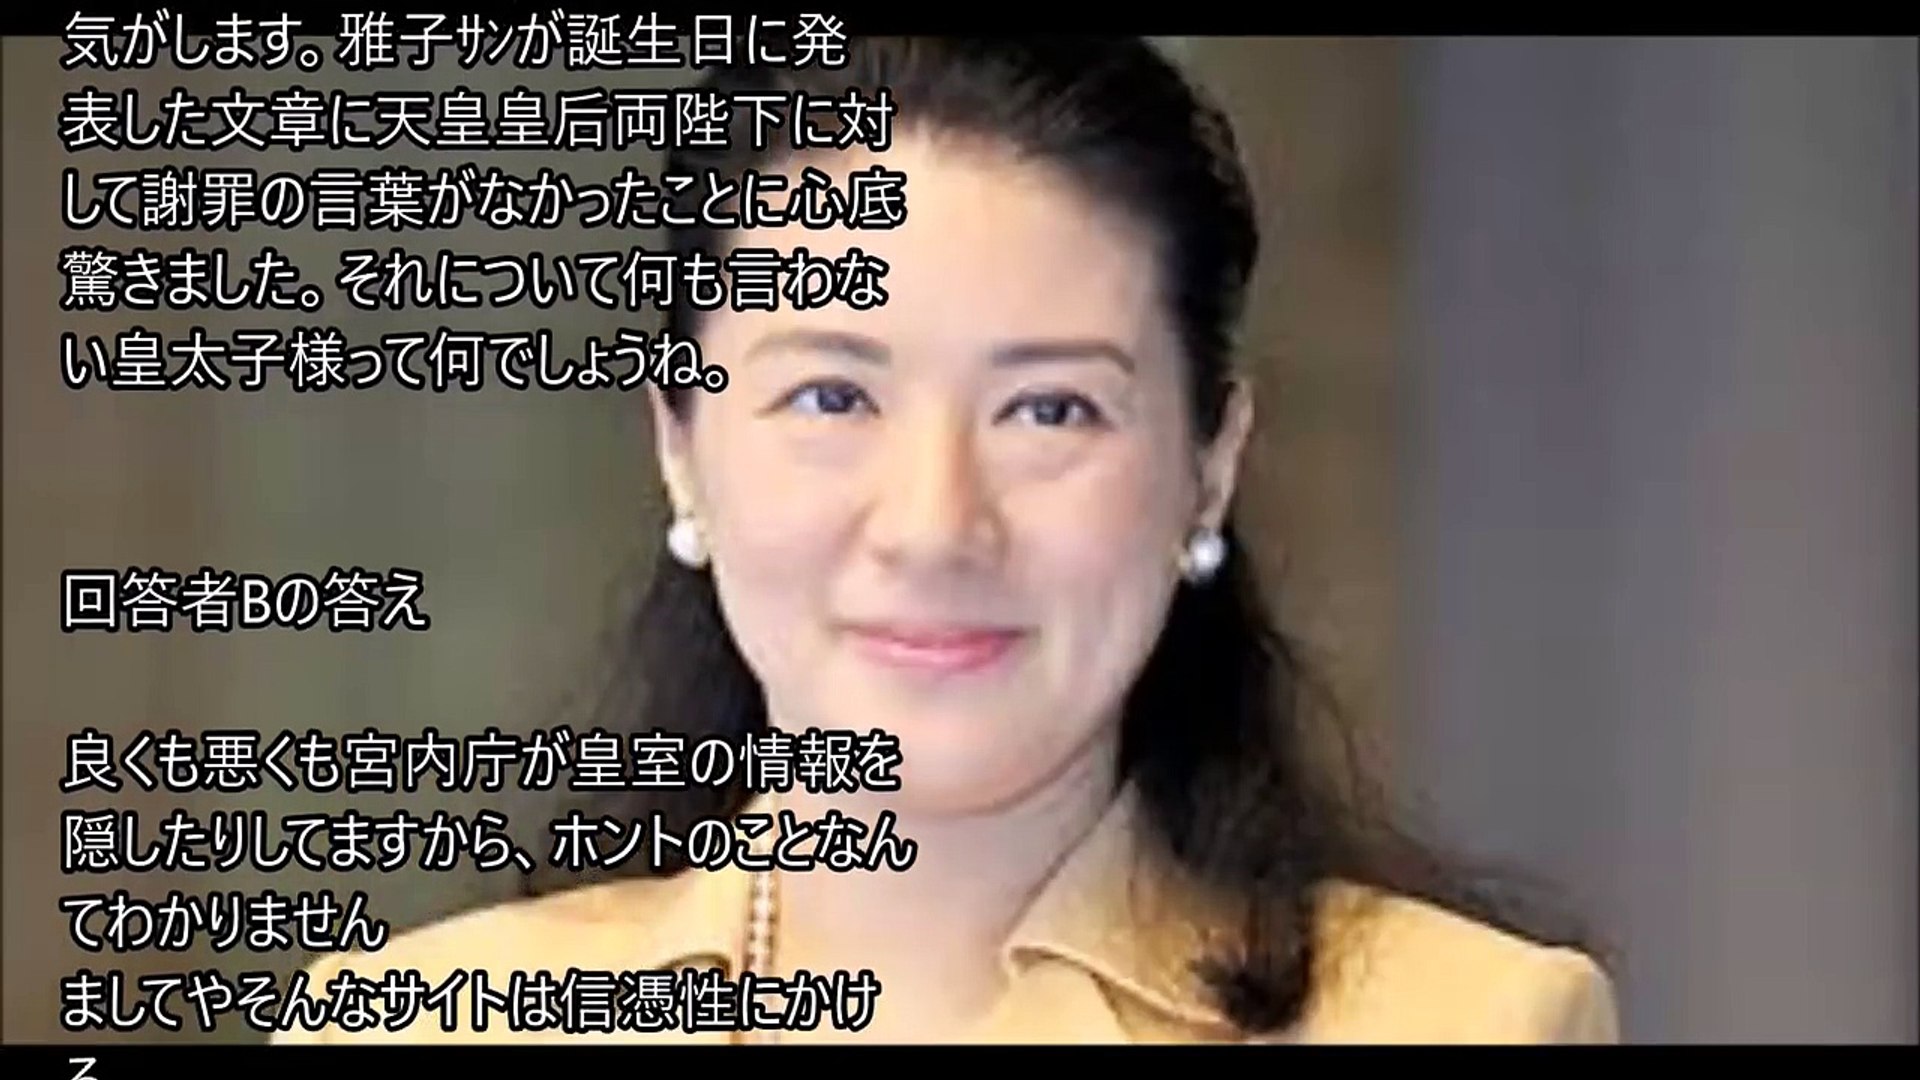 皇室 雅子妃と小和田家の闇 ネットで拾い読みして驚愕 Video Dailymotion